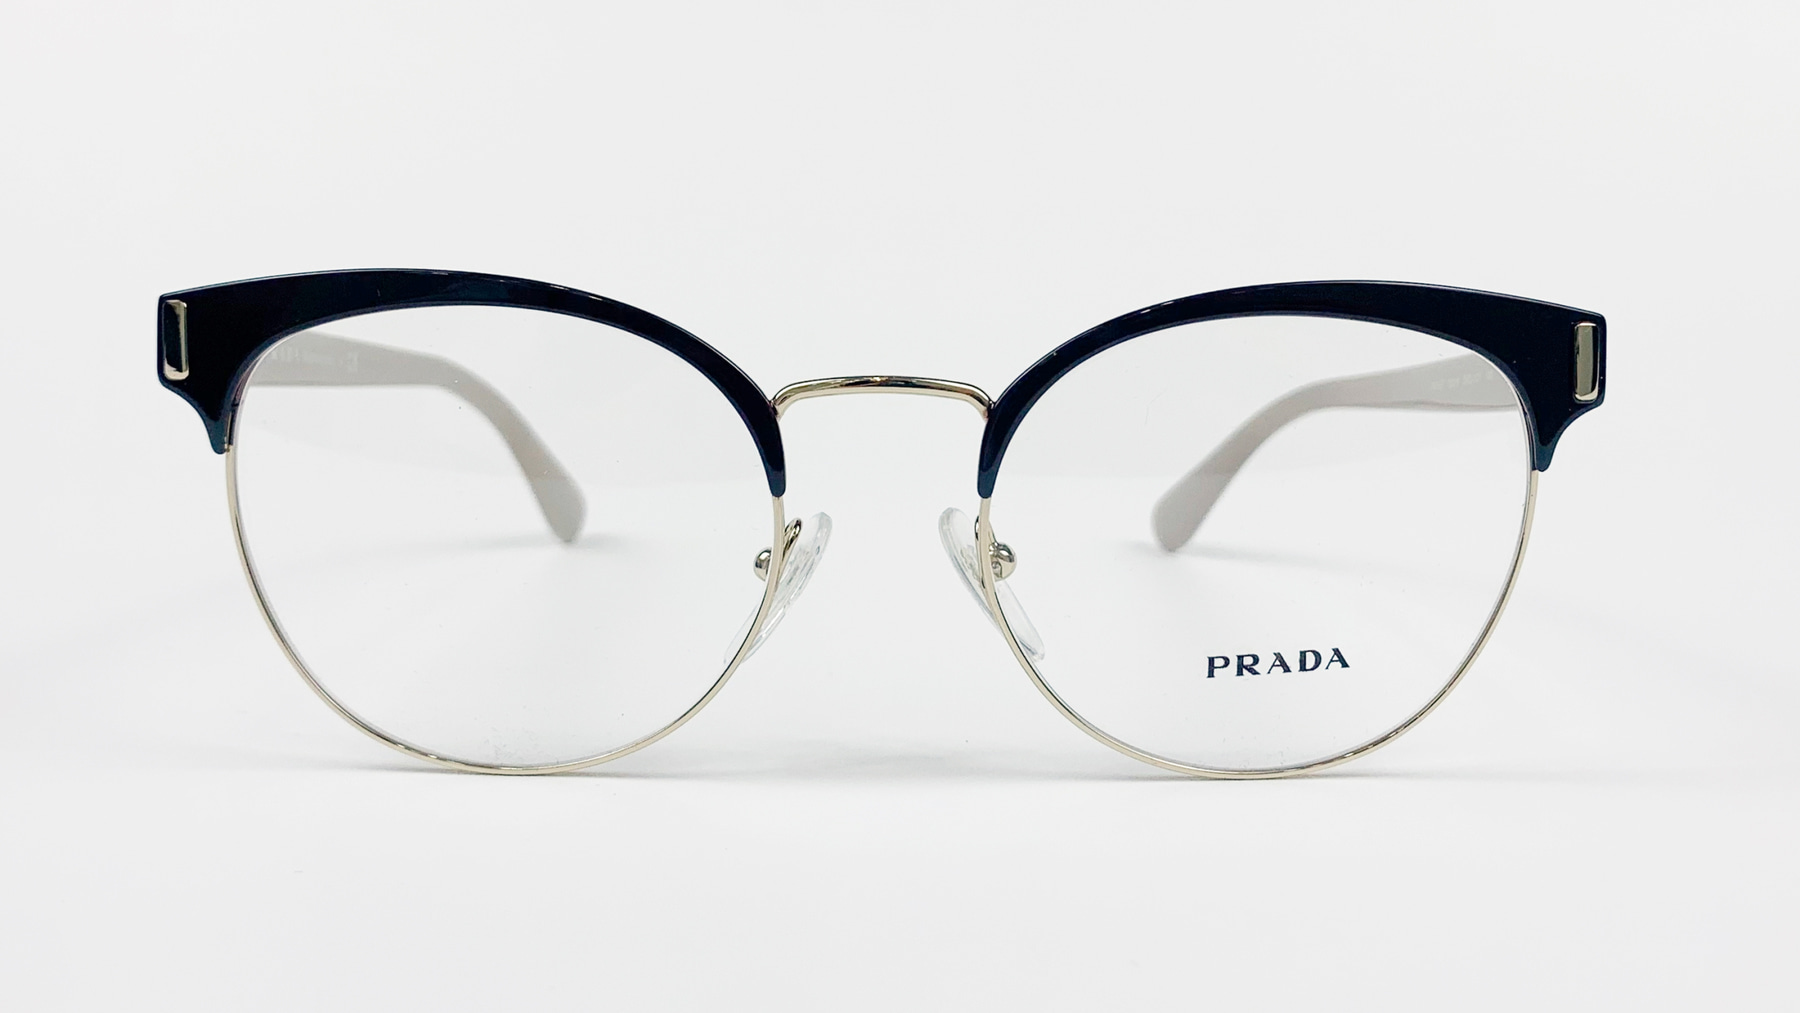 PRADA VPR 63T, Korean glasses, sunglasses, eyeglasses, glasses